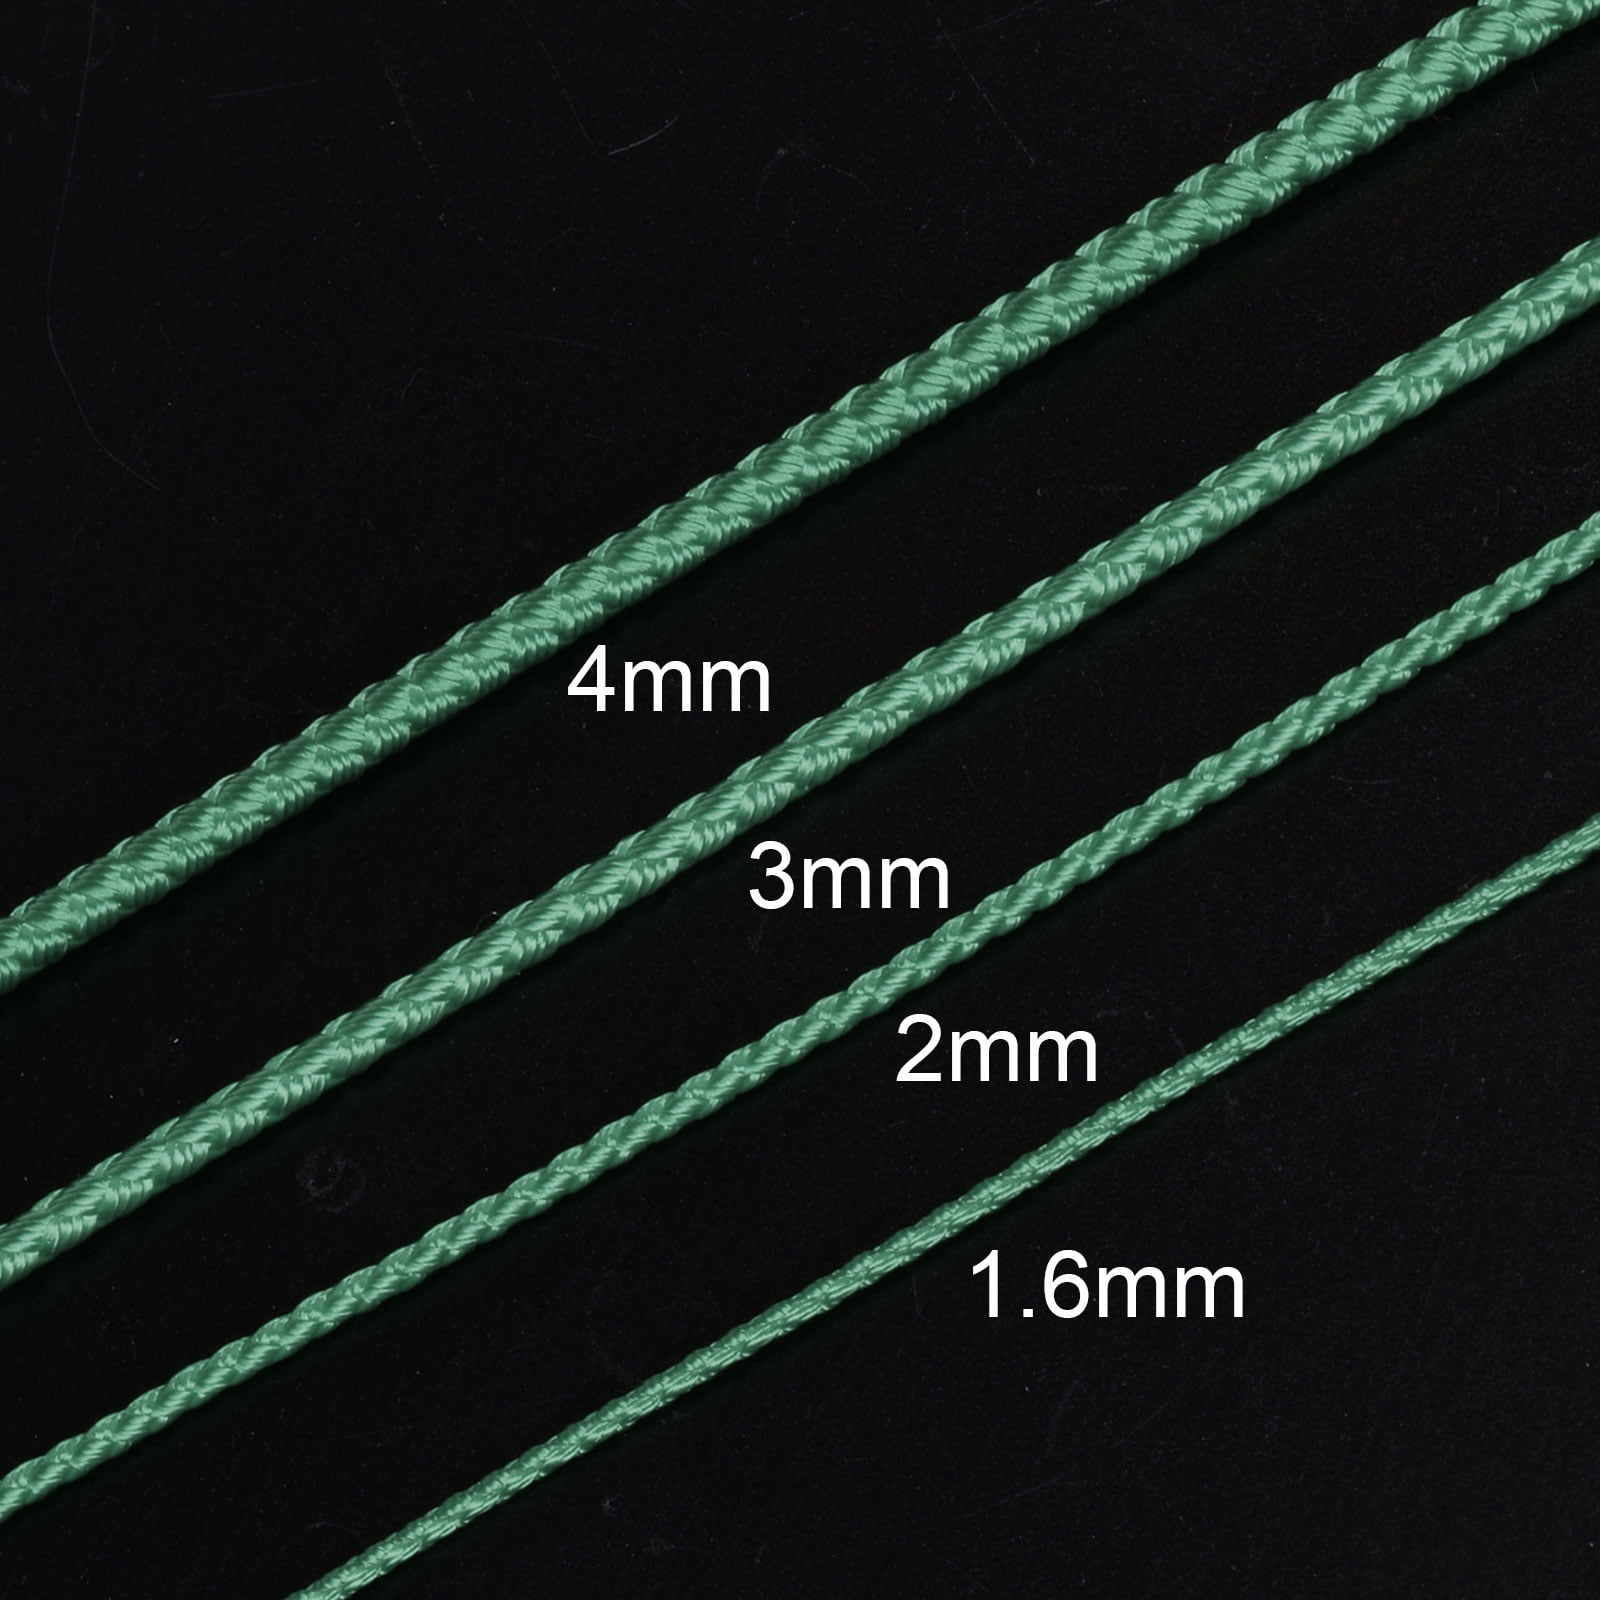 Nylon String for Pulley, 2-mm diameter, 100-feet long 